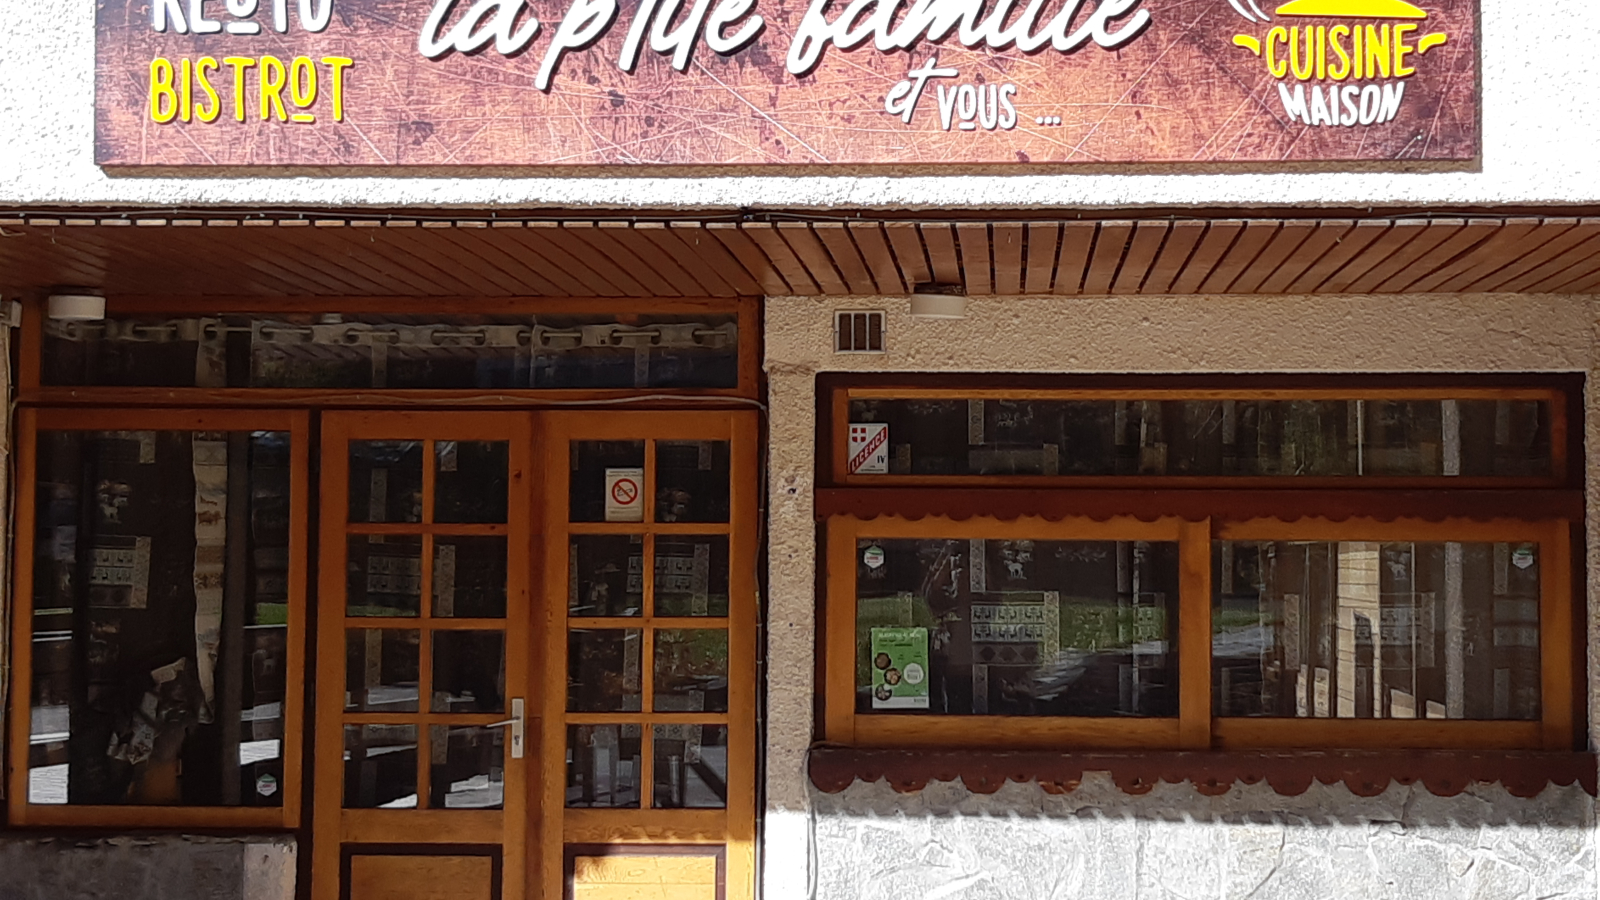 Restaurant La Ptite Famille à Valfréjus